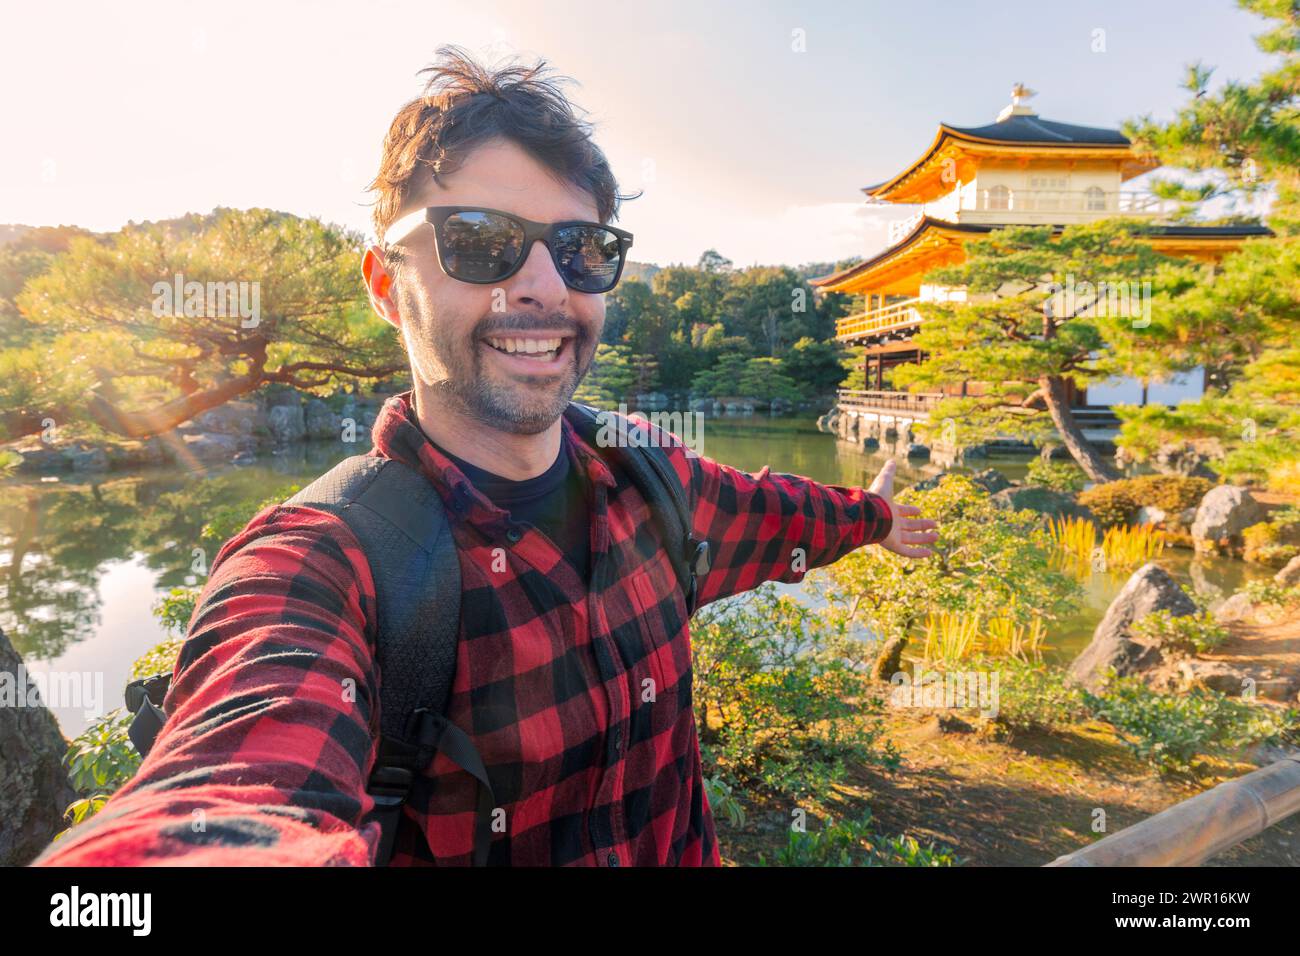 Bello giovane turista che si gode una vacanza estiva a Kyoto, Giappone - viaggiare concetto di stile di vita con un uomo sorridente che scatta selfie in strada con il giappone Foto Stock